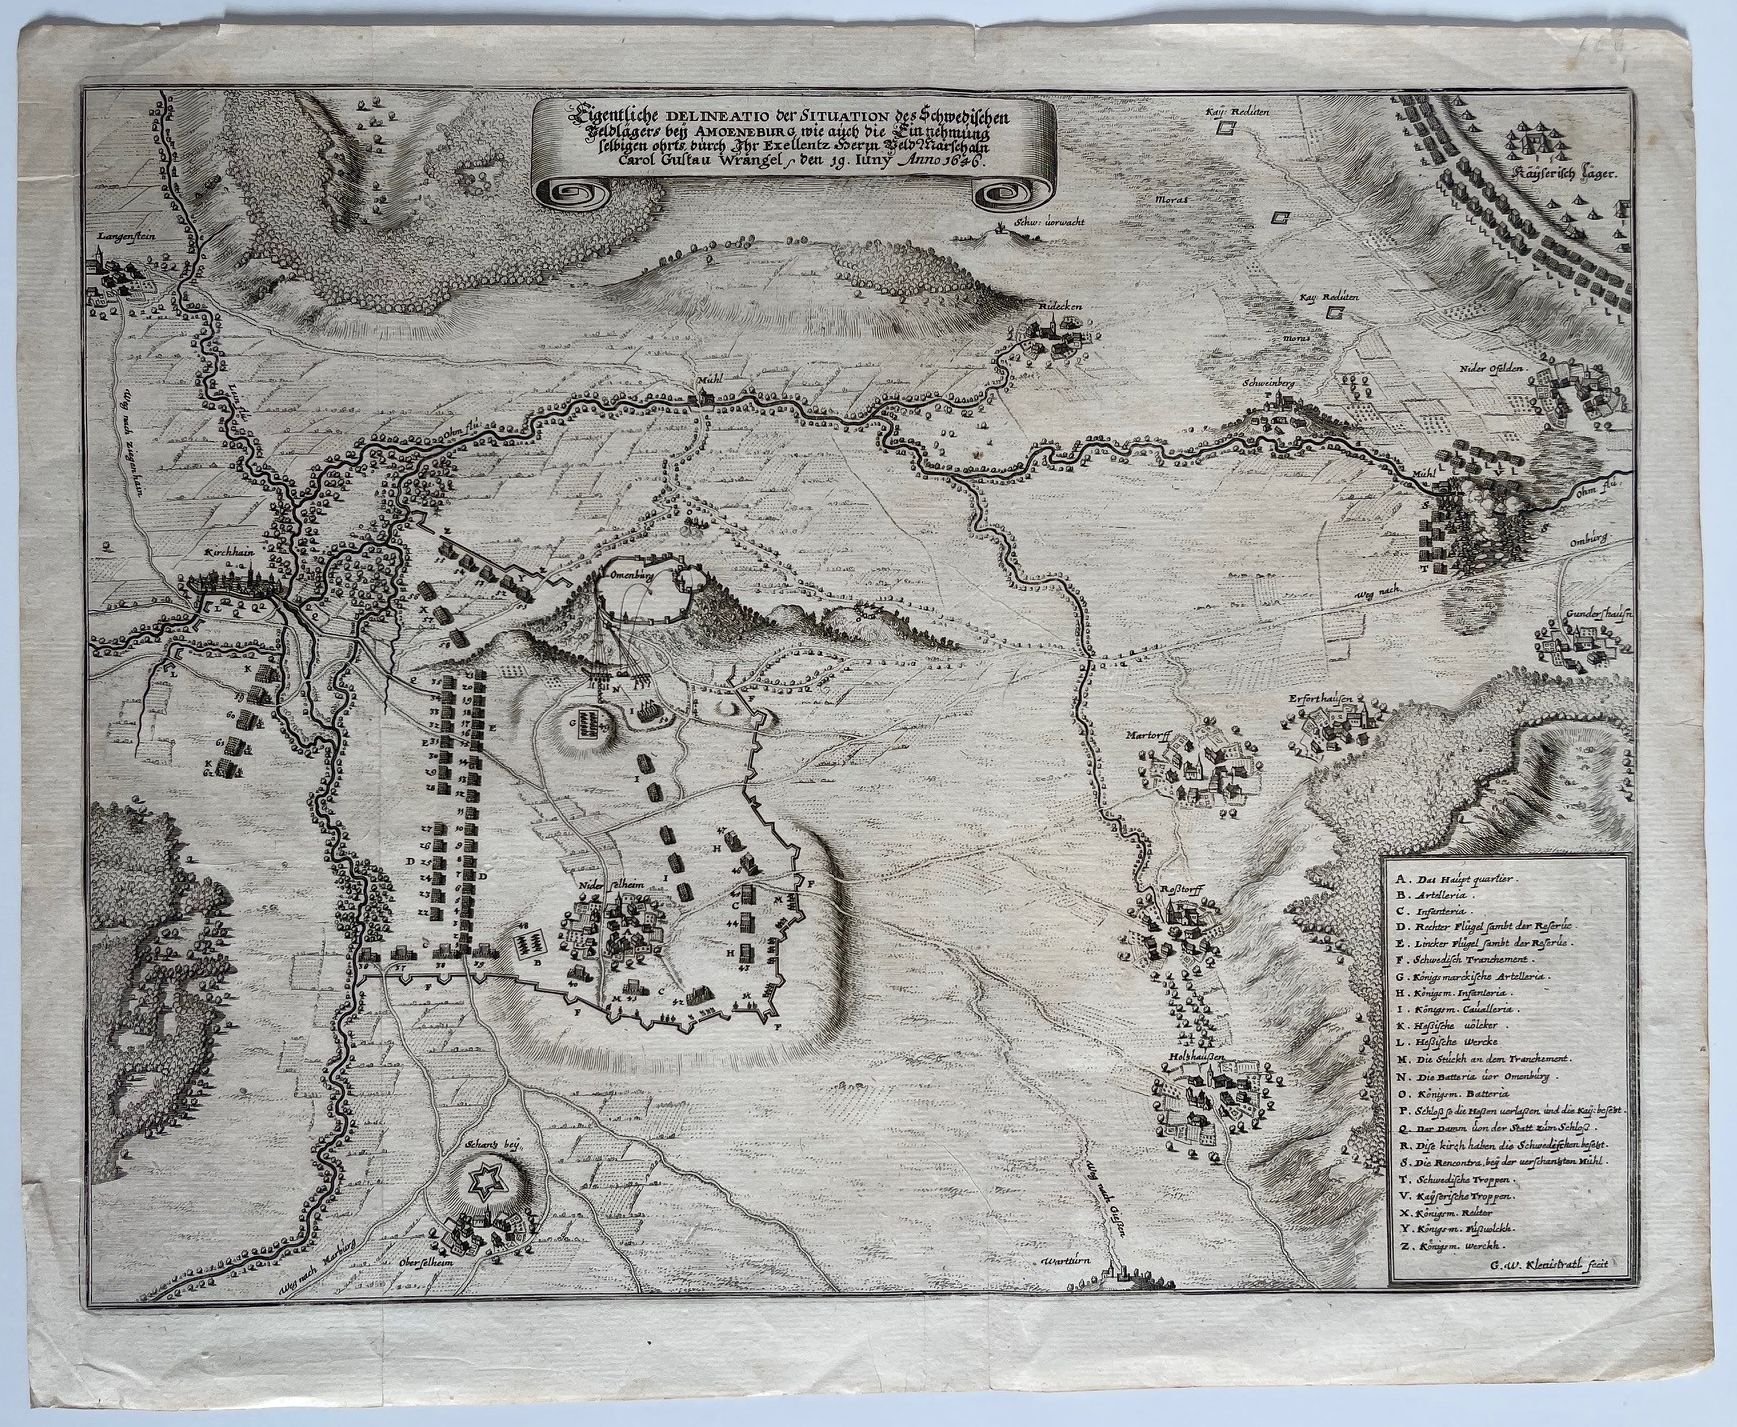 Karte, Eigentliche Delineatio der Situation des Schwedischen Feldlägers bey Amoeneburg, usw. 19. Juni 1646 (Taunus-Rhein-Main - Regionalgeschichtliche Sammlung Dr. Stefan Naas CC BY-NC-SA)